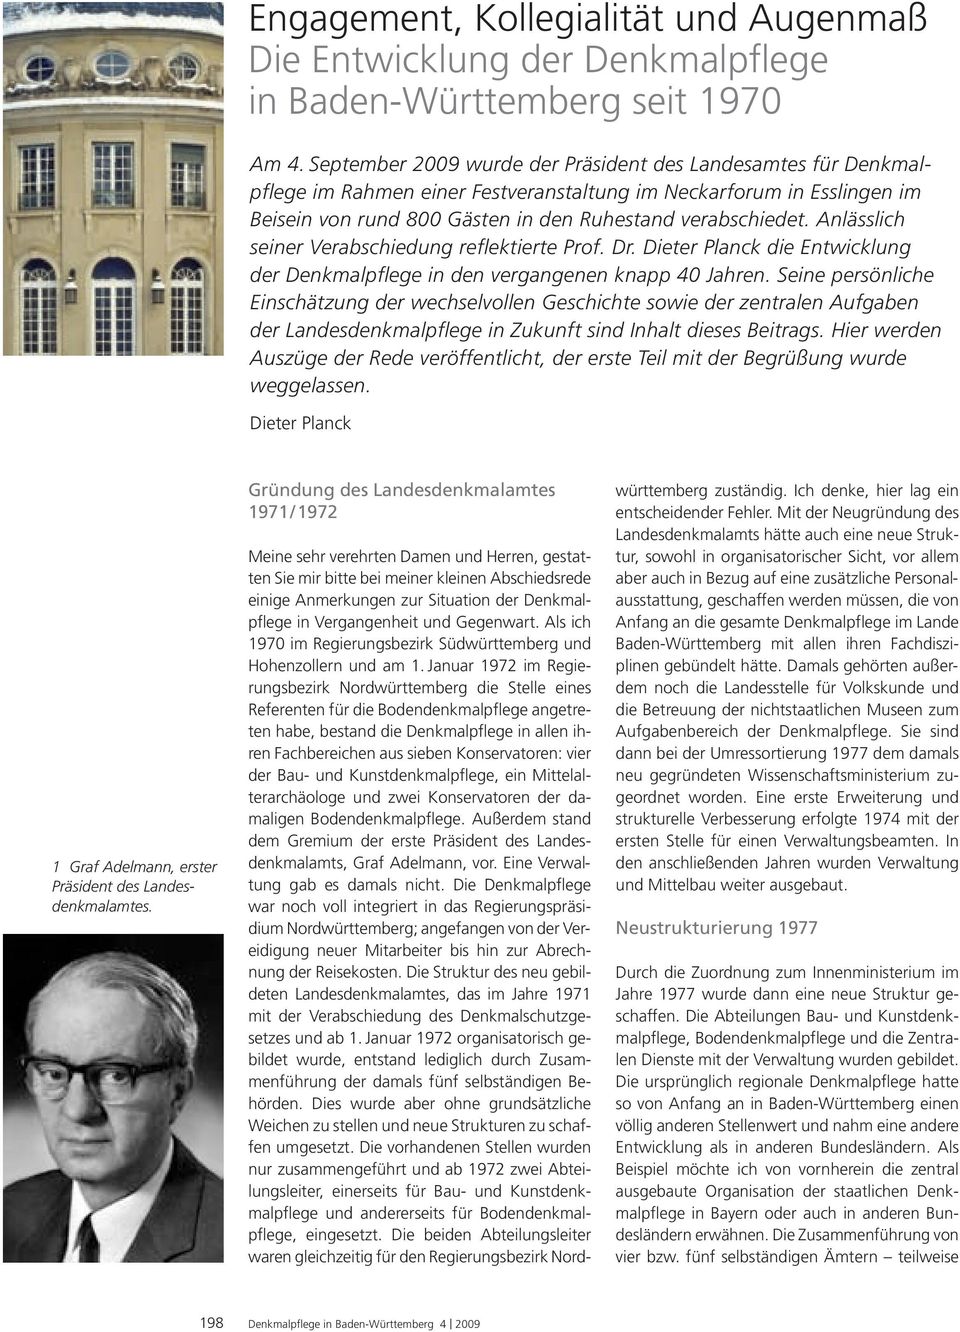 Anlässlich seiner Verabschiedung reflektierte Prof. Dr. Dieter Planck die Entwicklung der Denkmalpflege in den vergangenen knapp 40 Jahren.